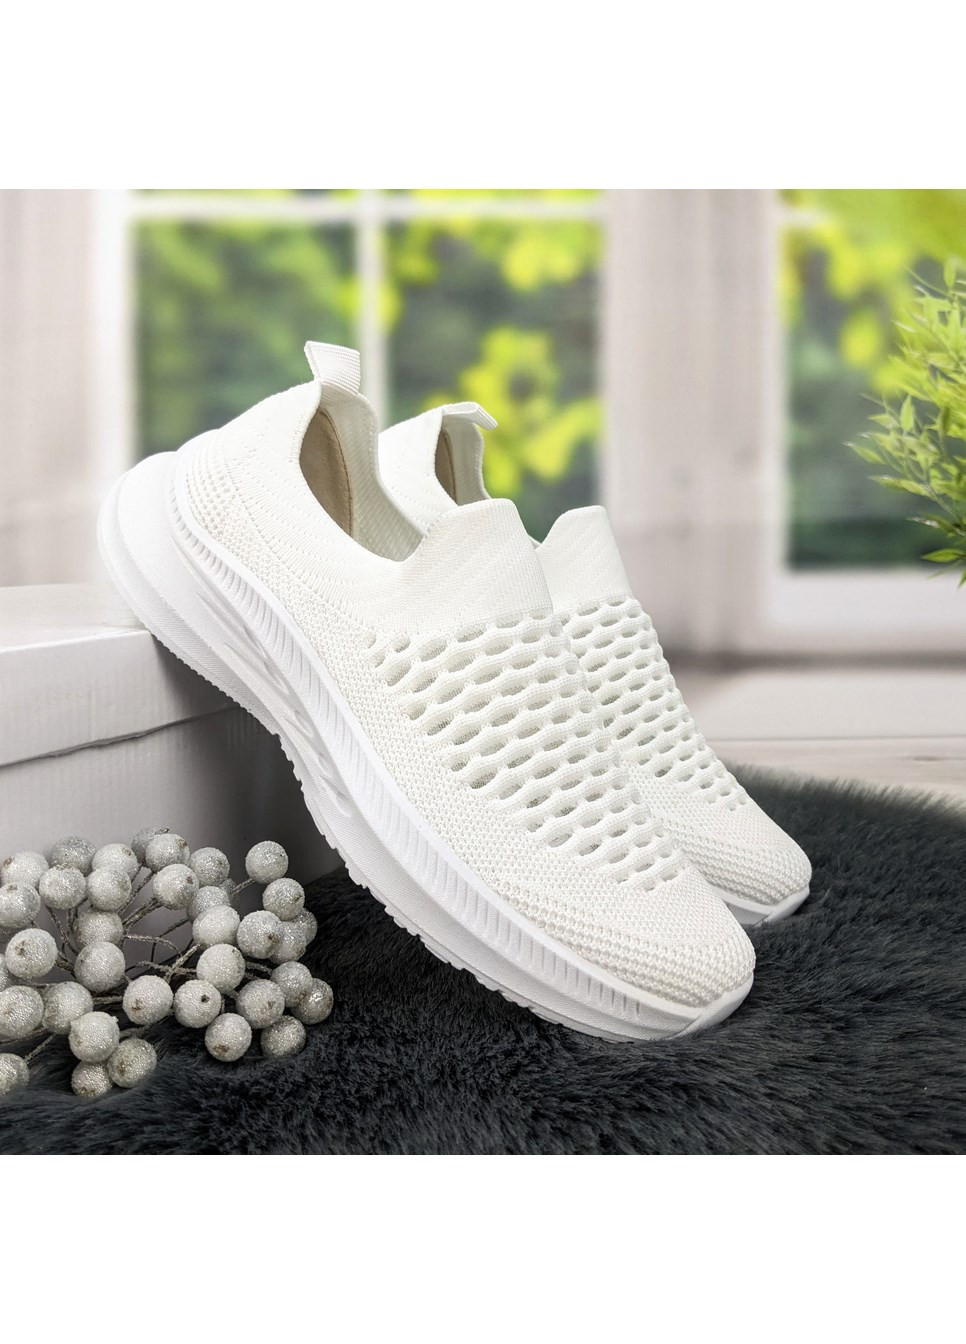 Білі всесезонні кросівки жіночі текстильні весняно-літні Dago